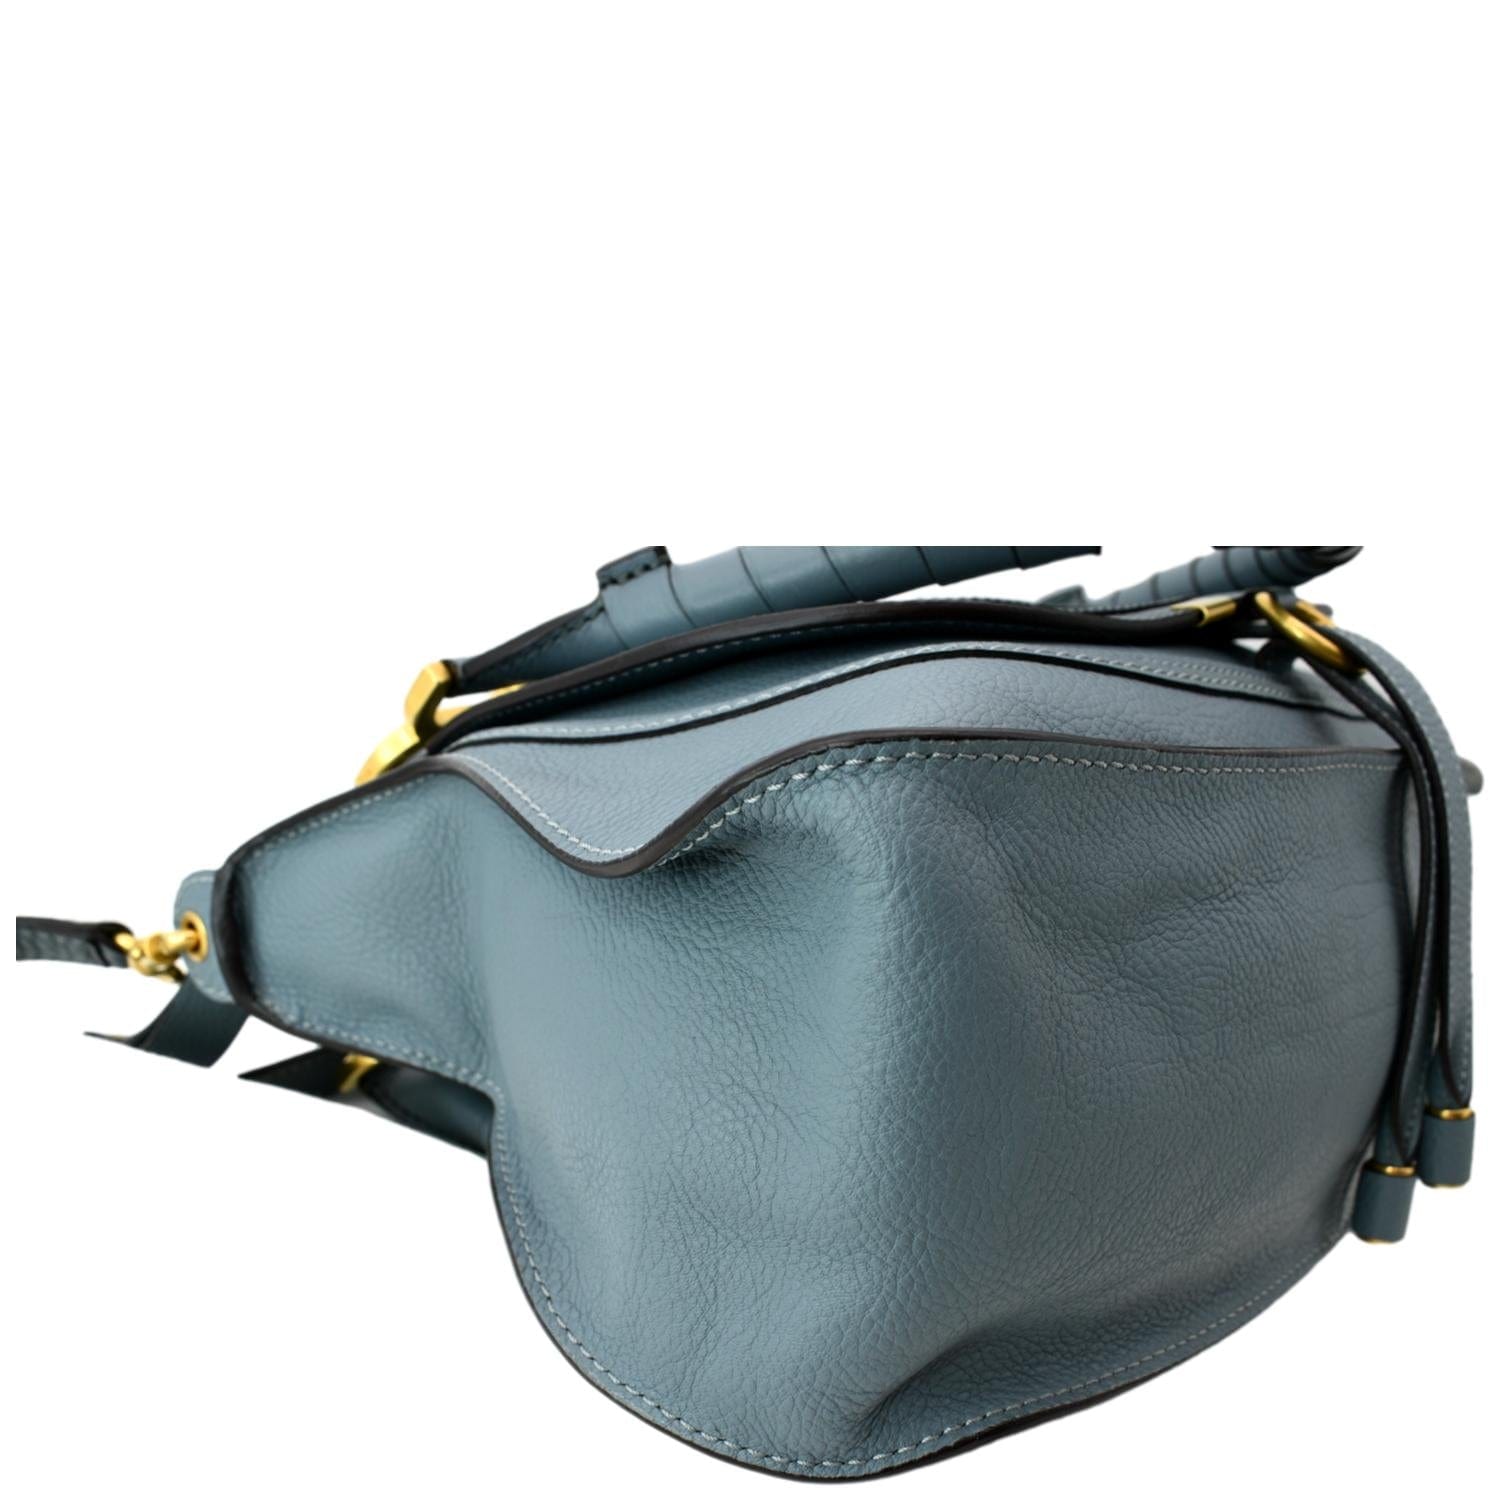 Chloé Marcie Leather Bag